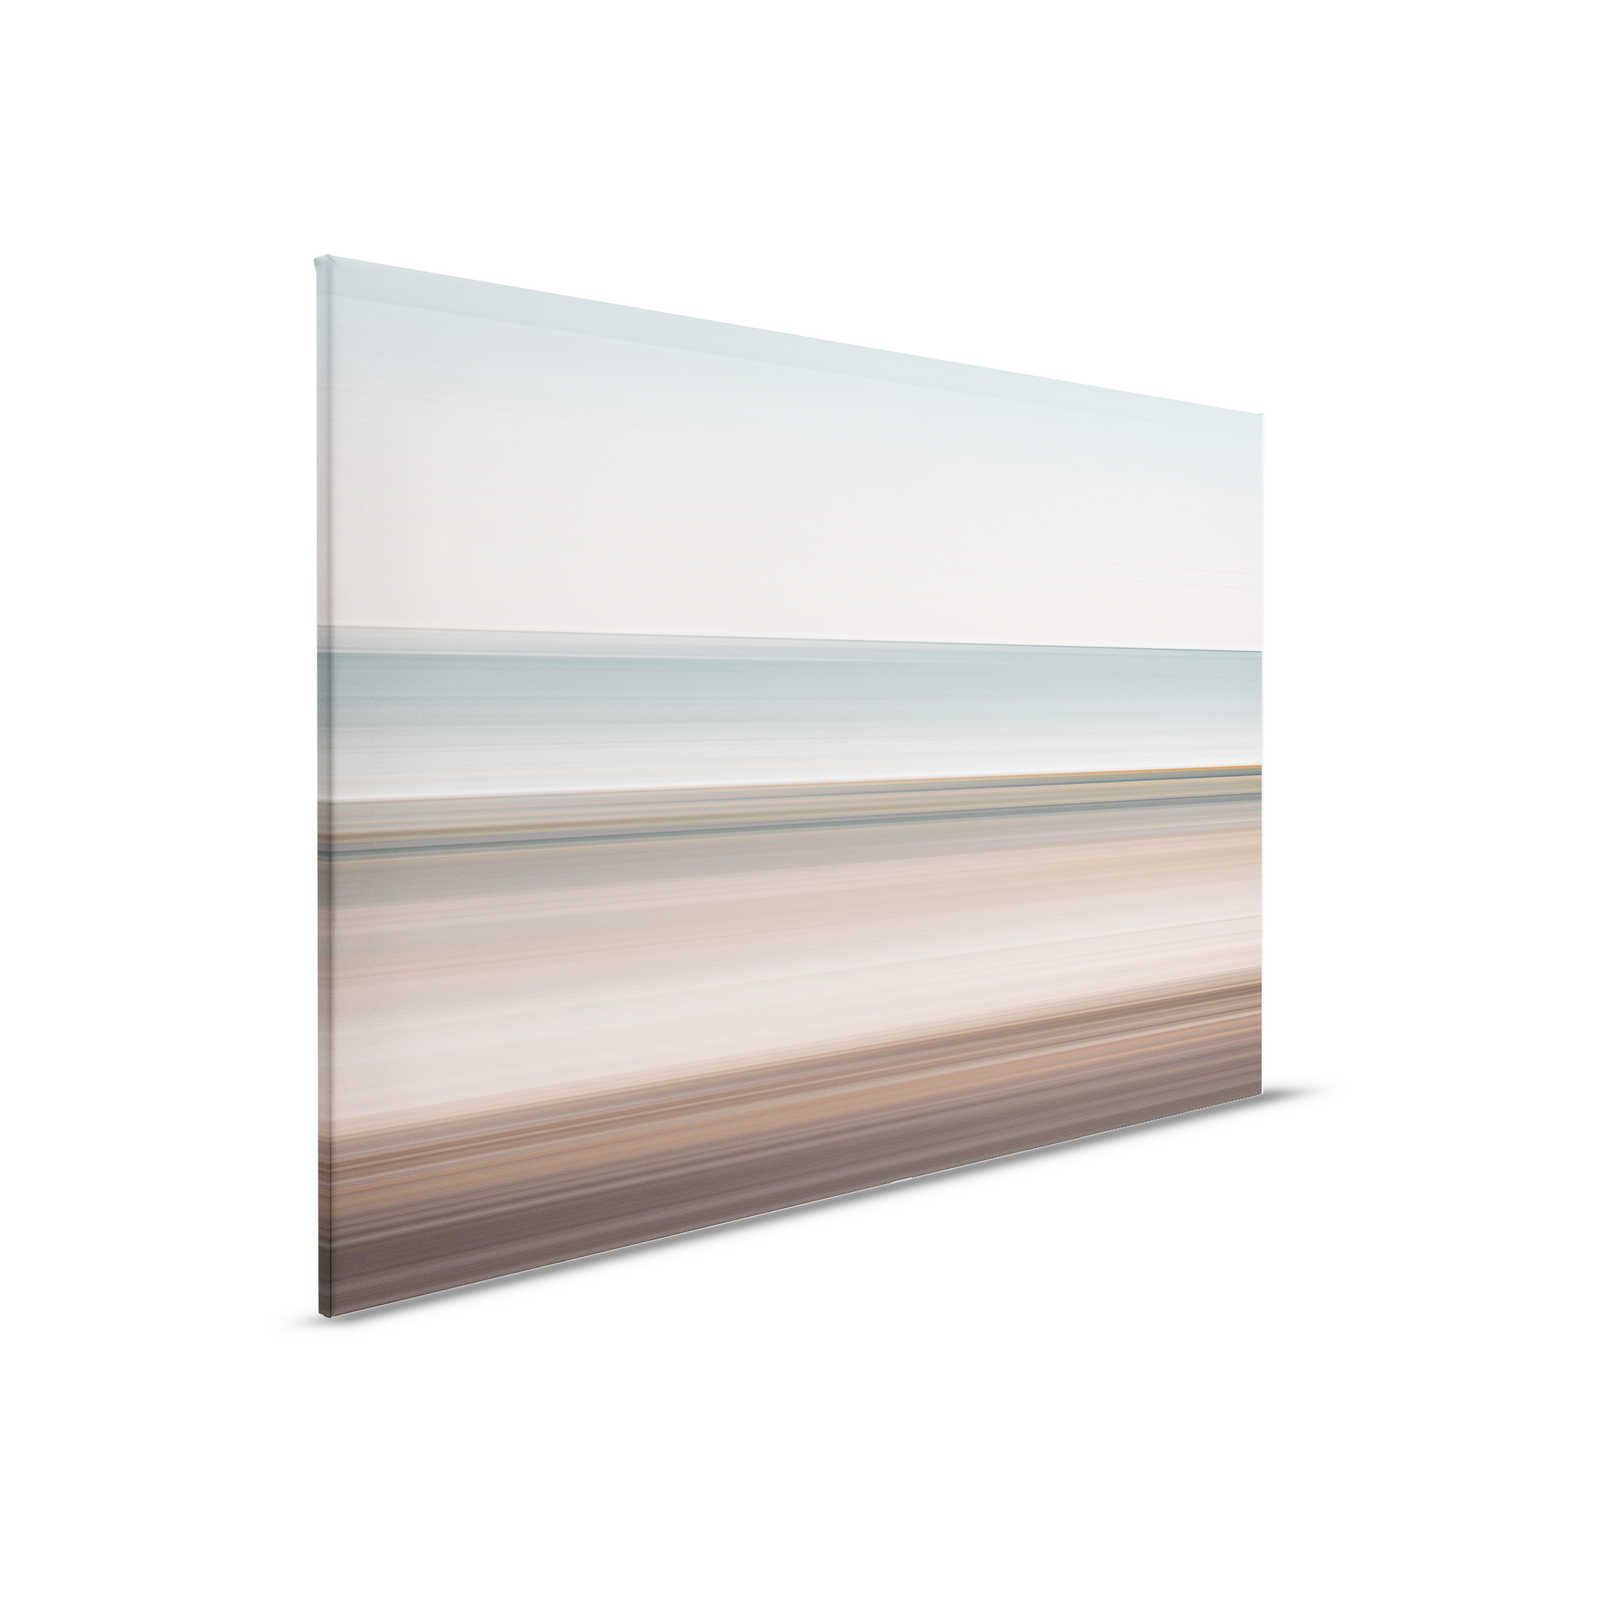         Horizon 2 - Leinwandbild abstrakte Landschaft mit Liniendesign – 0,90 m x 0,60 m
    